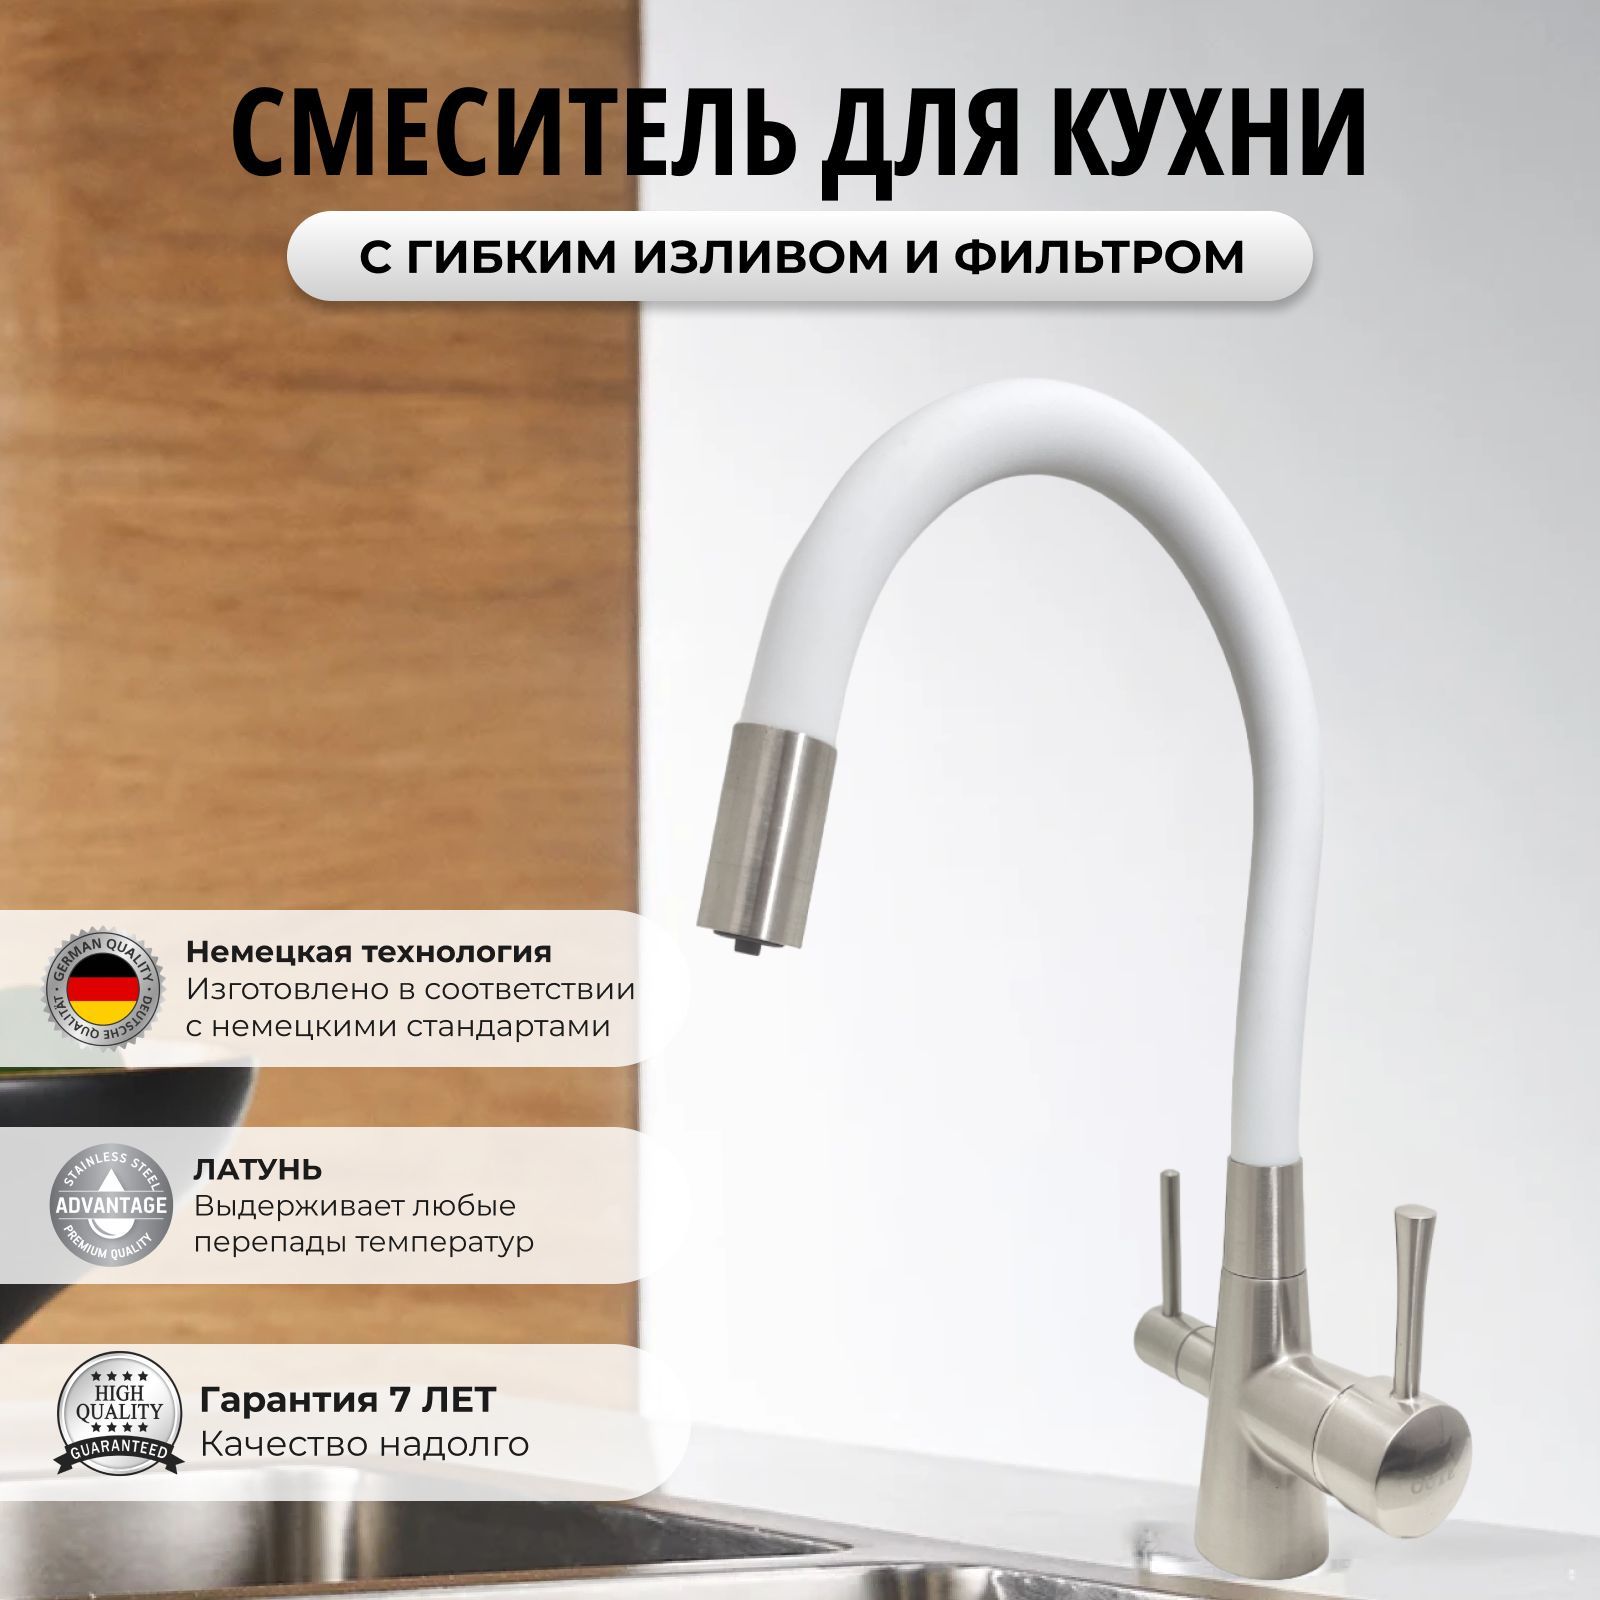 Смеситель OUTE 6053254100 для кухни с фильтром для питьевой воды белый сатин латунь смеситель для кухни с фильтром для питьевой воды рмс sus127pvd 017f 015